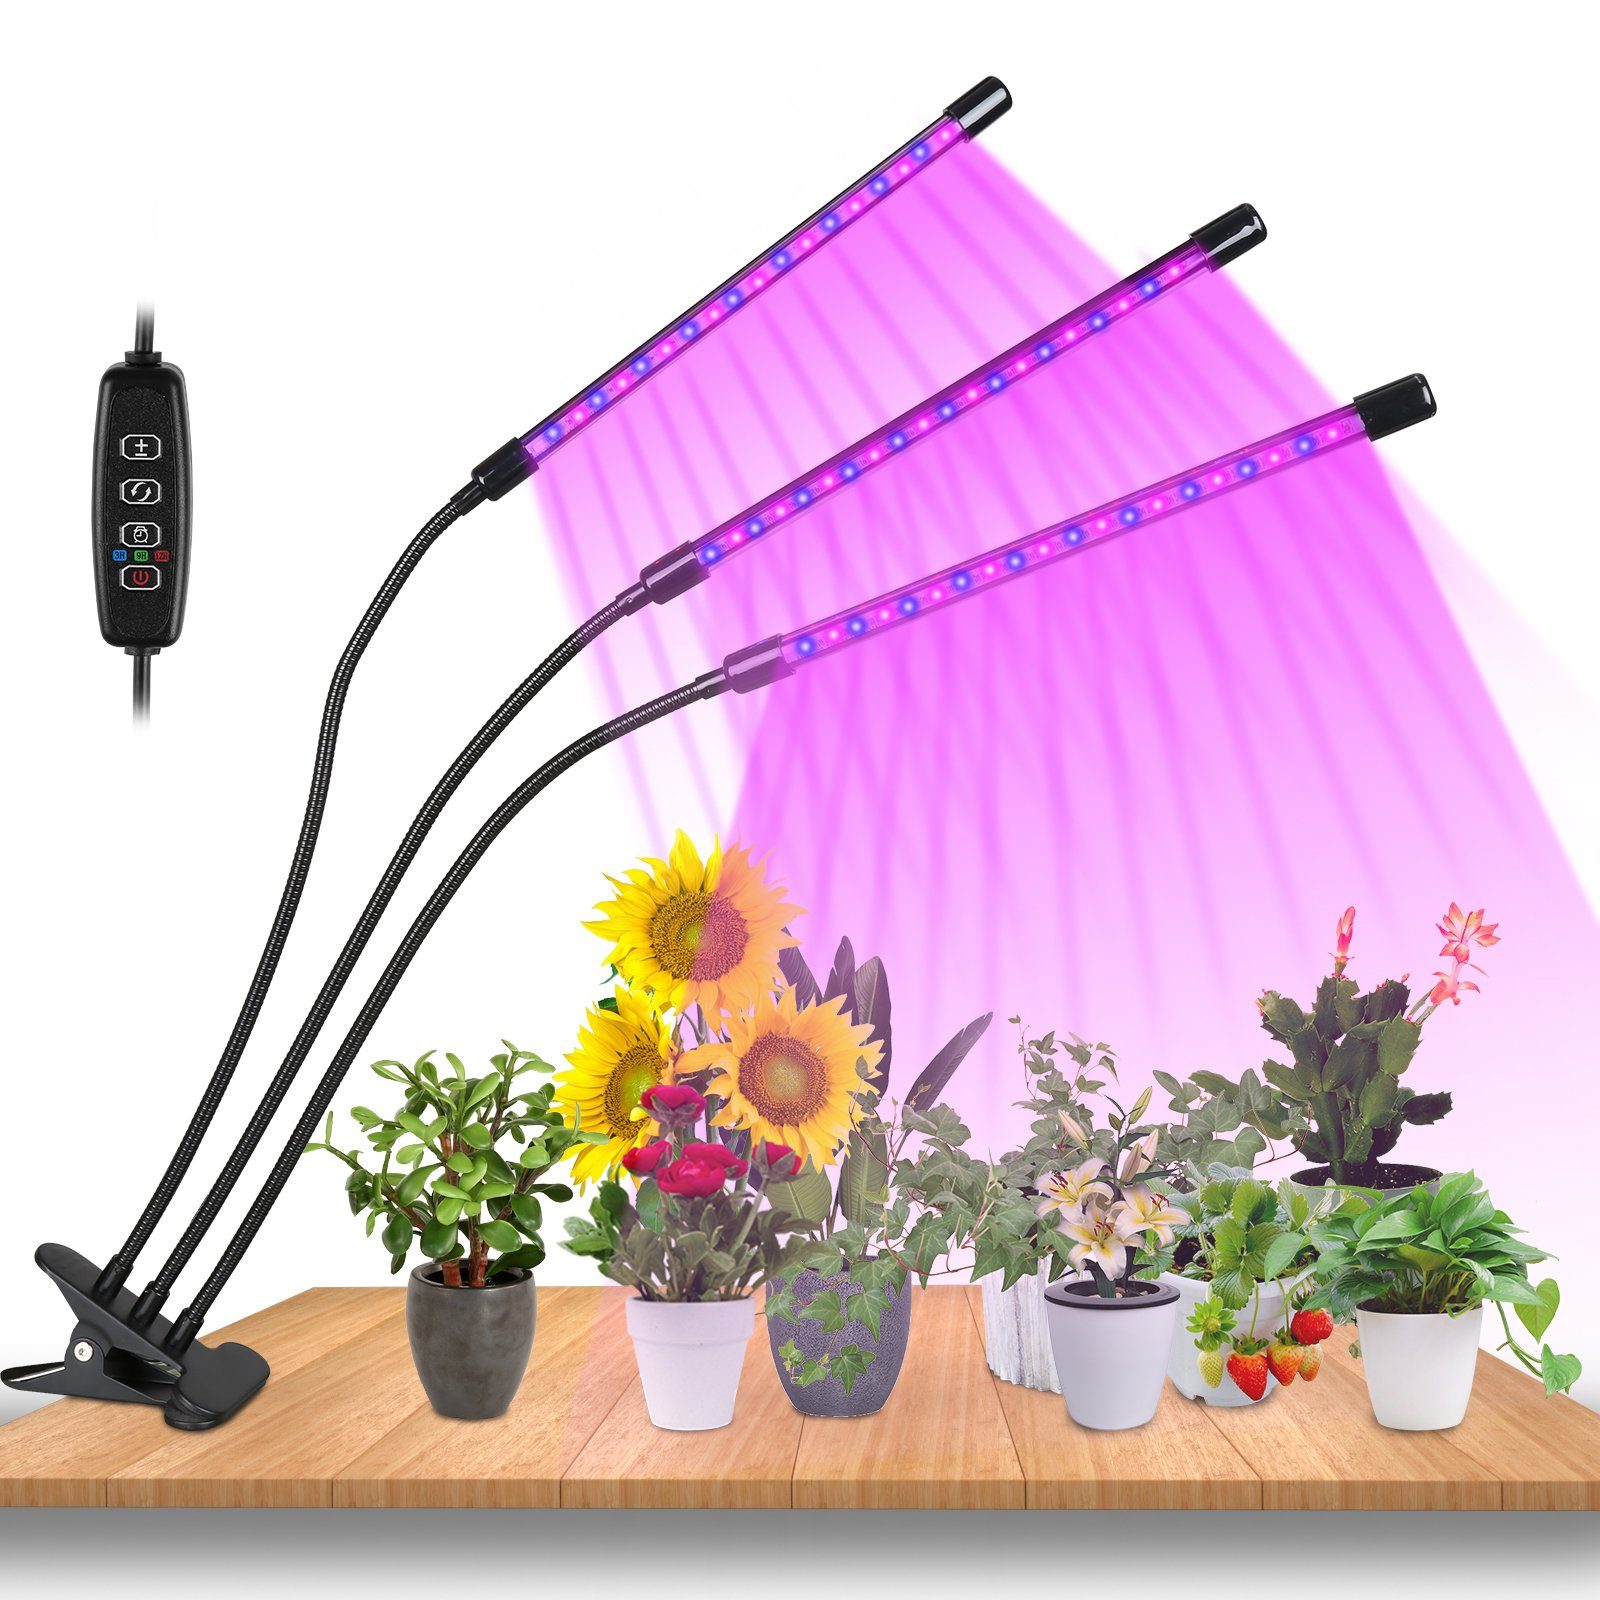 TolleTour Pflanzenlampe LED Pflanzenlicht 30W Dimmbar Vollspektrum 3 Kopf Wachstumslampe, Grow Light mit 3 Licht Modus, 10 Helligkeitsstufen